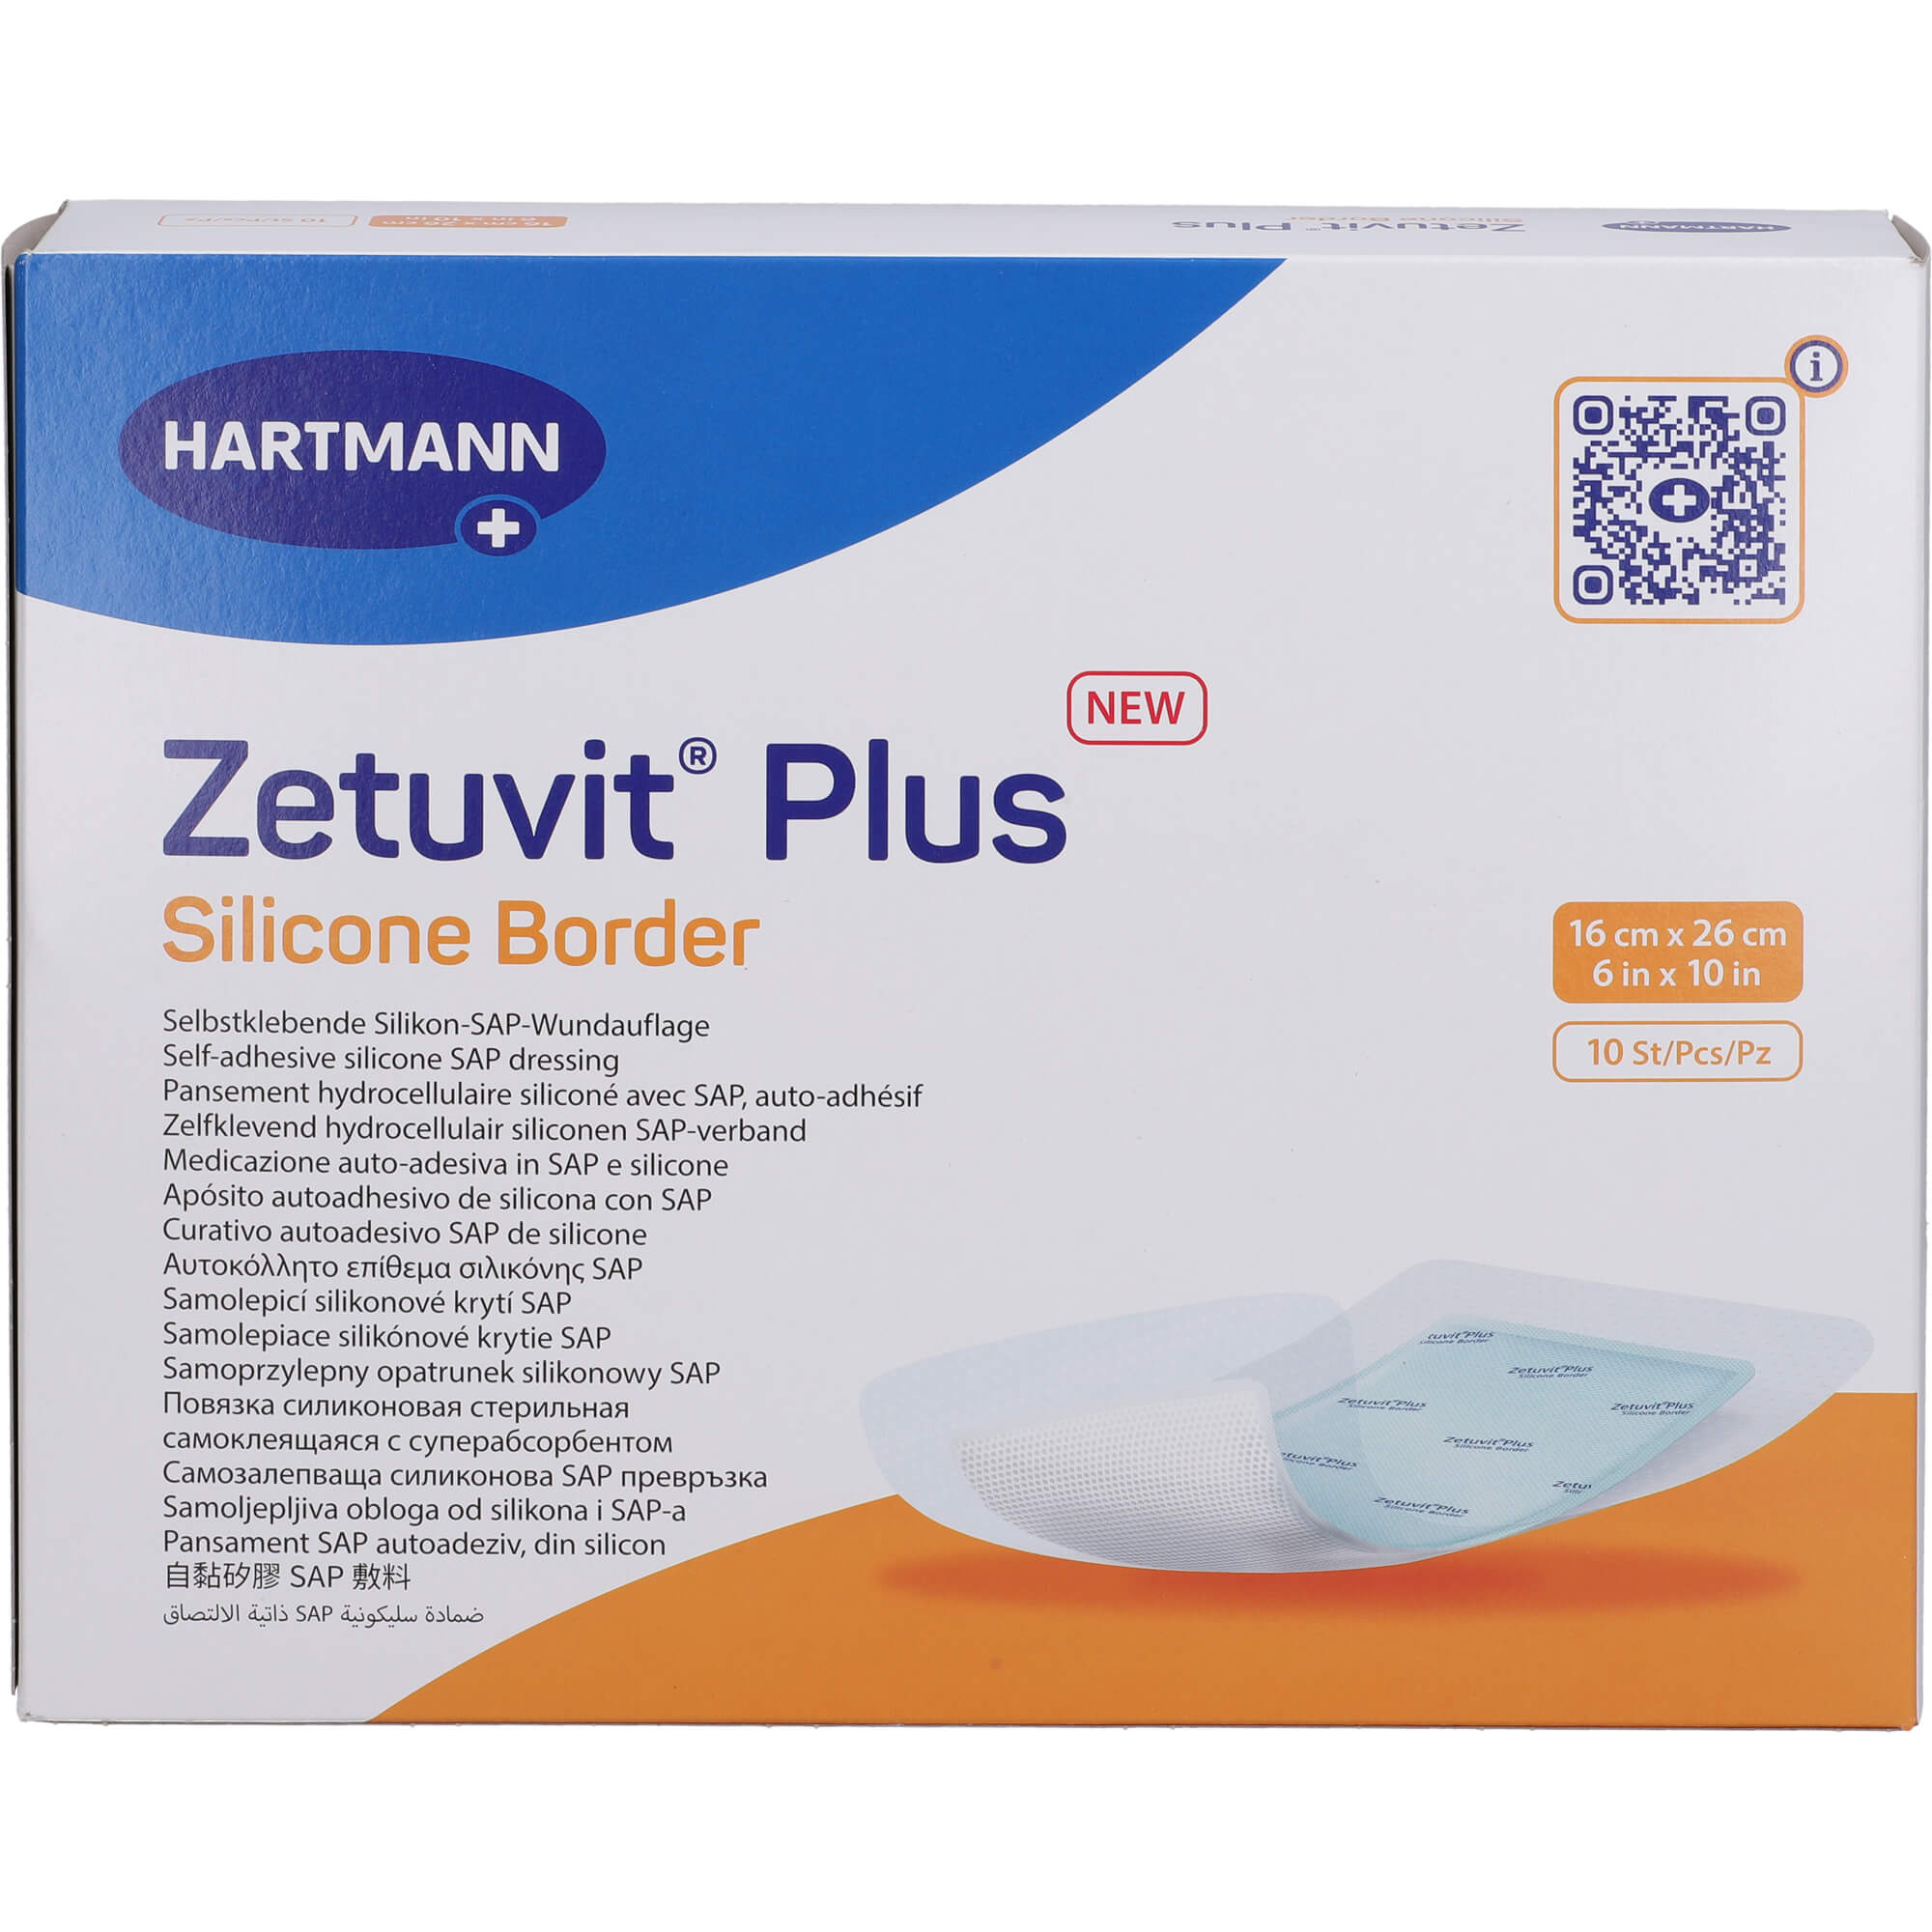 ZETUVIT Plus Silicone Border steril 16x26 cm